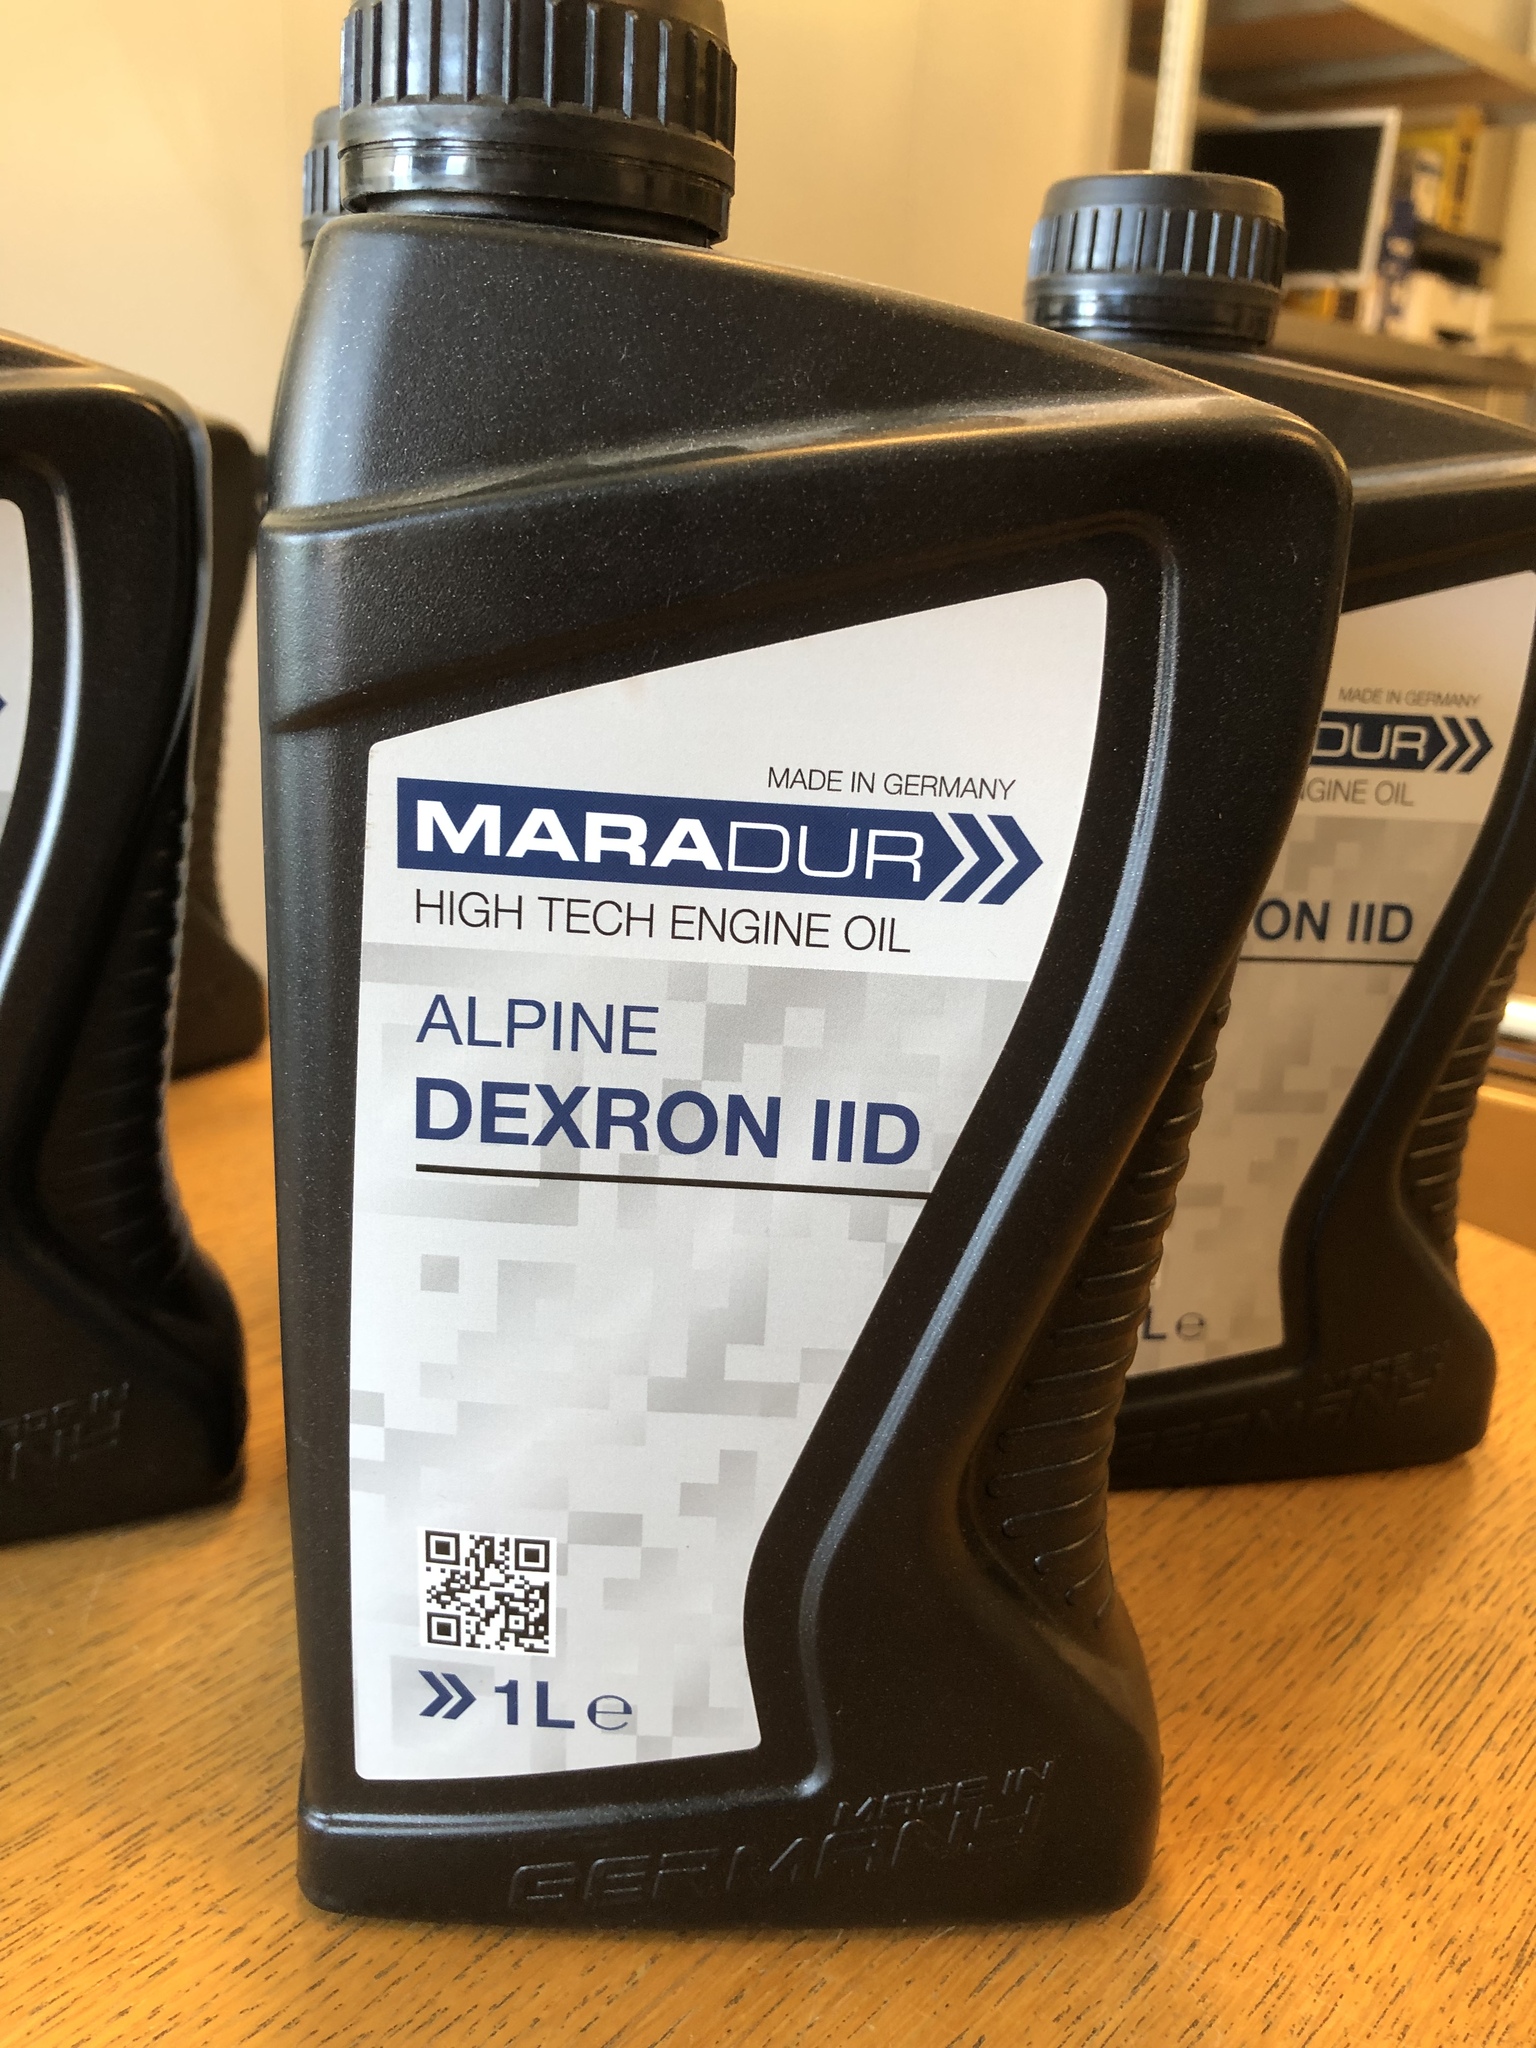 Växellådsolja, Maradur Alpine Dexron IID, 1 liter